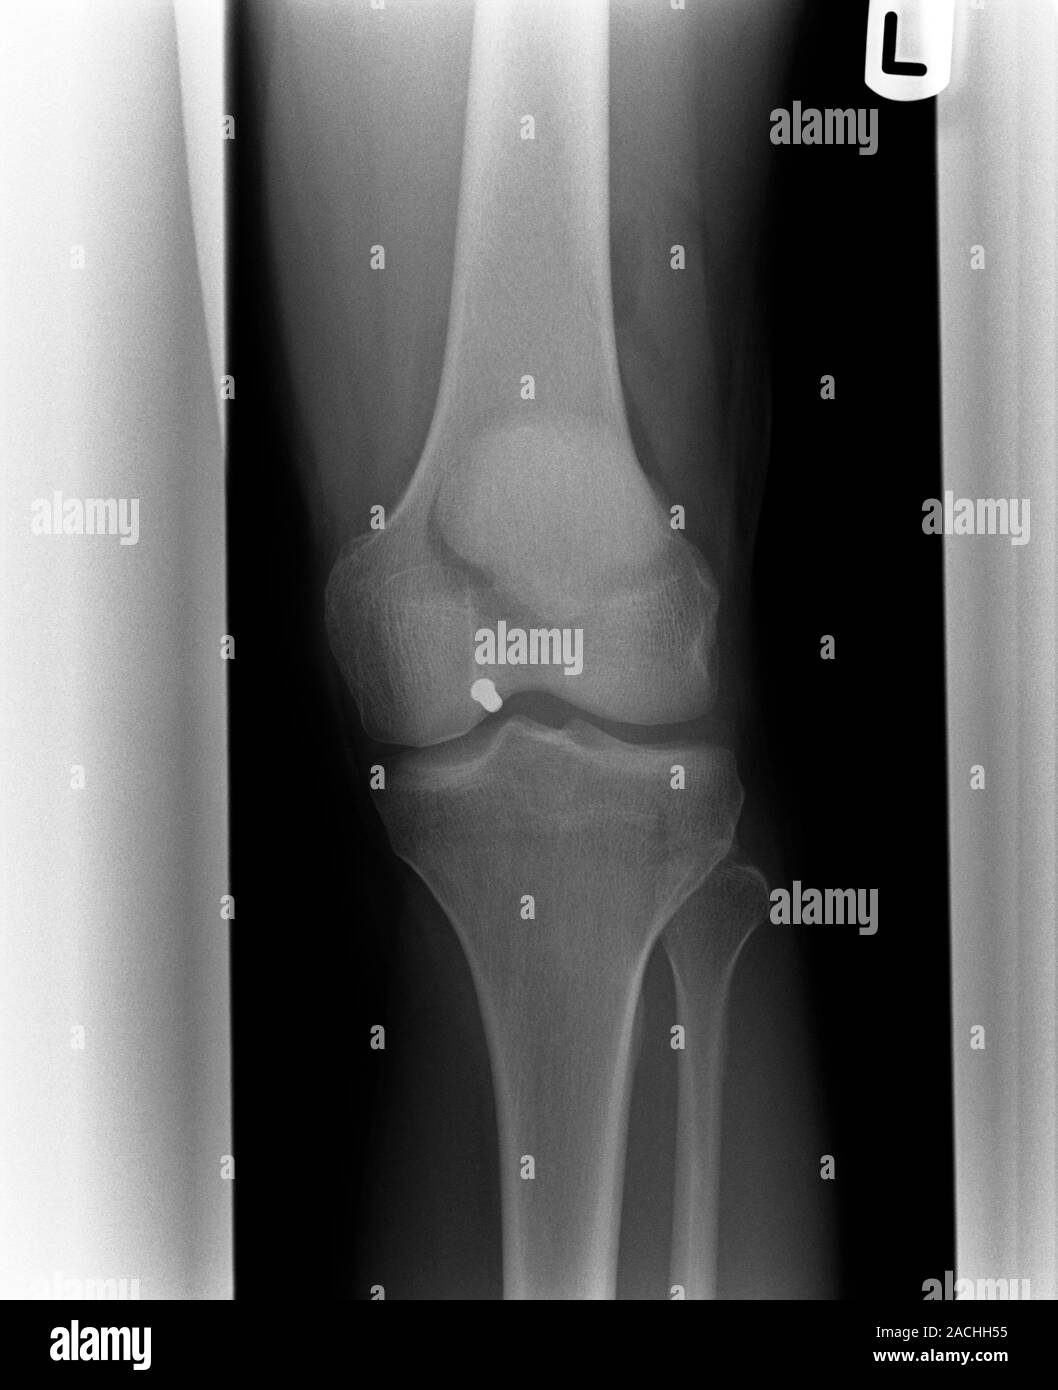 Blessures d'armes à feu. Vue frontale radiographie d'un patient qui a reçu  une balle dans le genou. Un pellet (point blanc) peut être vu juste en  dessous du genou au centre Photo